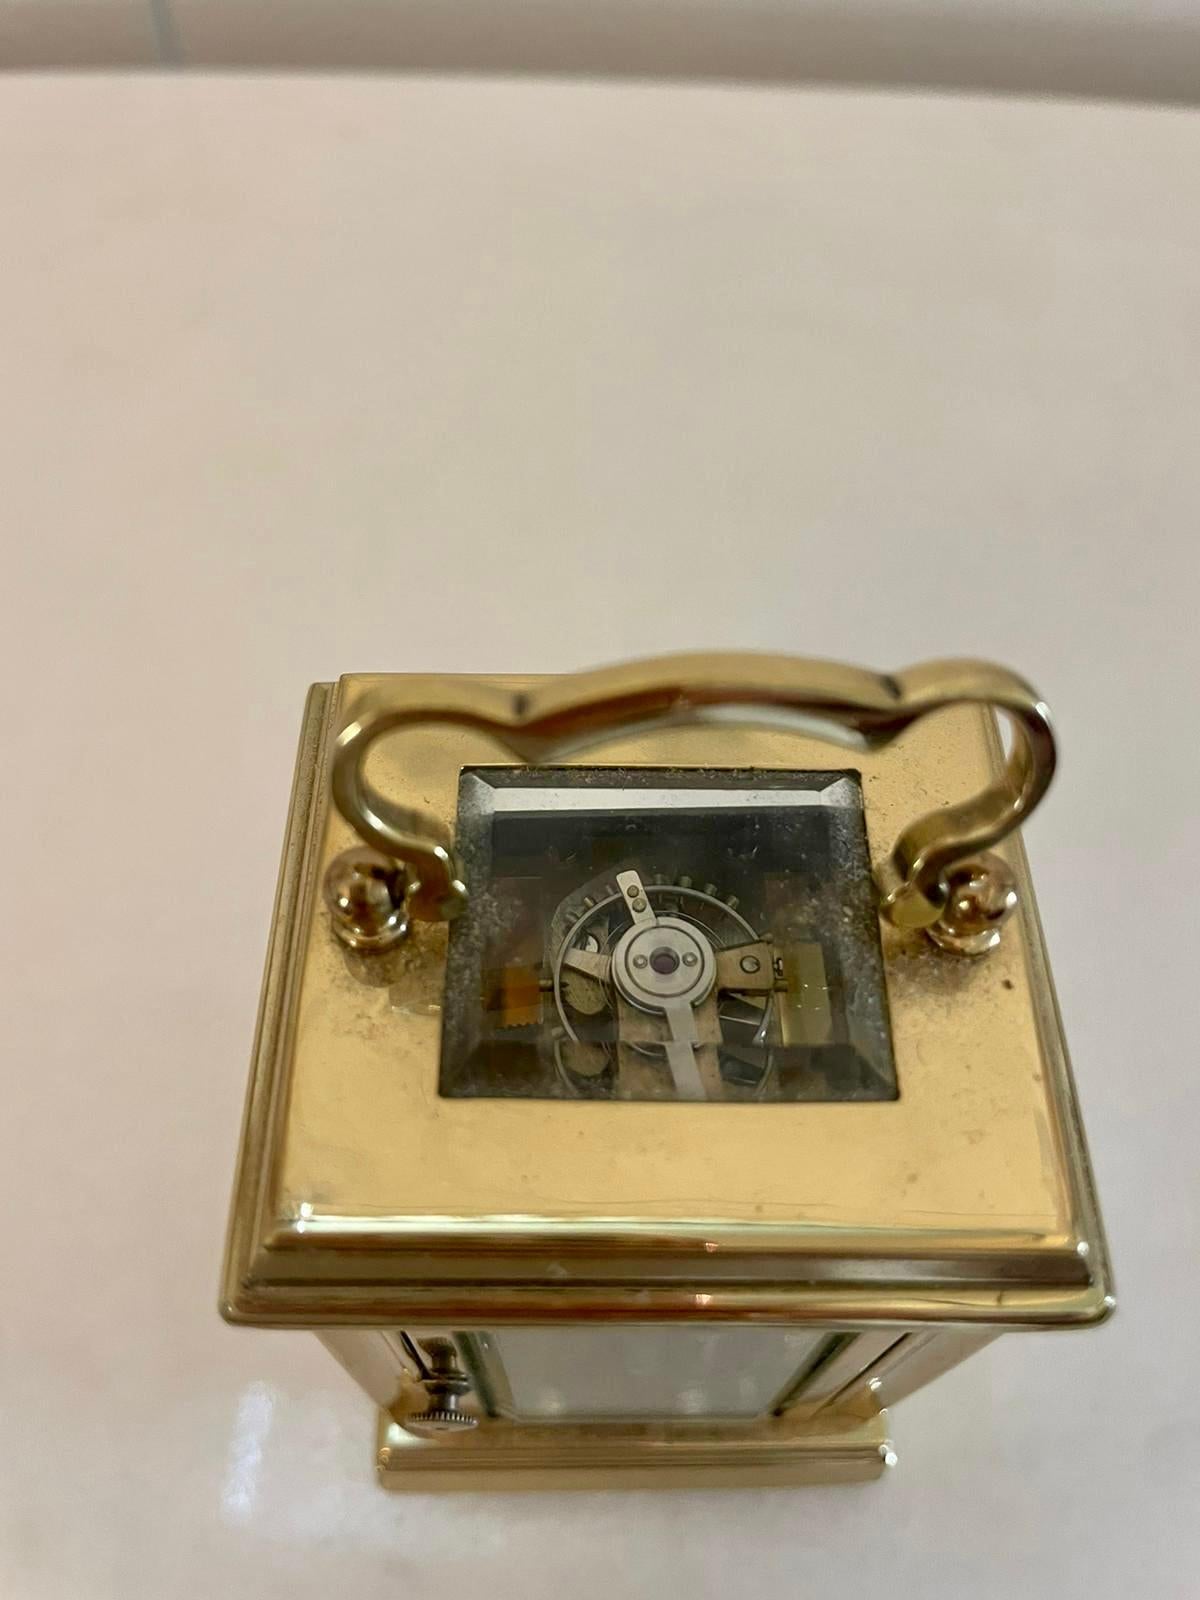 Pendule miniature en laiton de qualité française de l'époque édouardienne, avec un boîtier en laiton de qualité, des coins façonnés et un bord biseauté, des panneaux en verre, une poignée de transport façonnée sur le dessus, un cadran en émail blanc